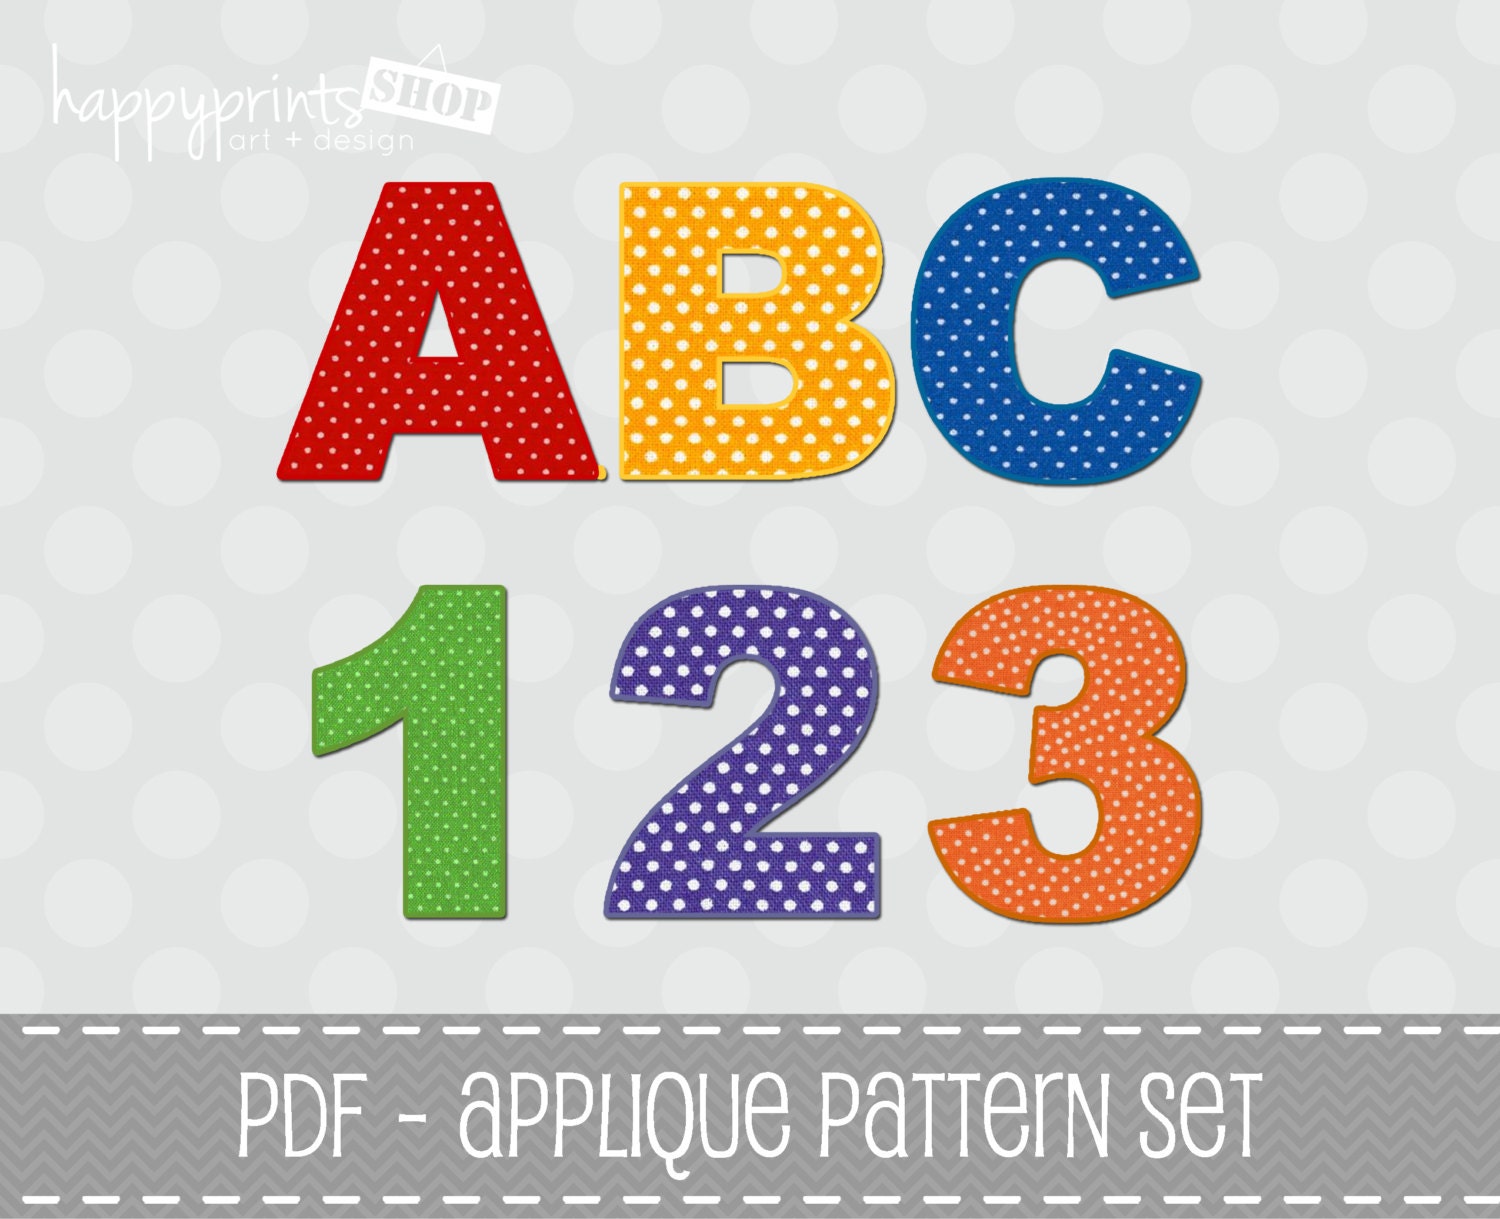 Applique Template - ABC 123 Applique Patterns Set - Complete Alphabet, Numbers & Symbols - PDF File - Commercial Use - INSTANT Download - happyprintsshop